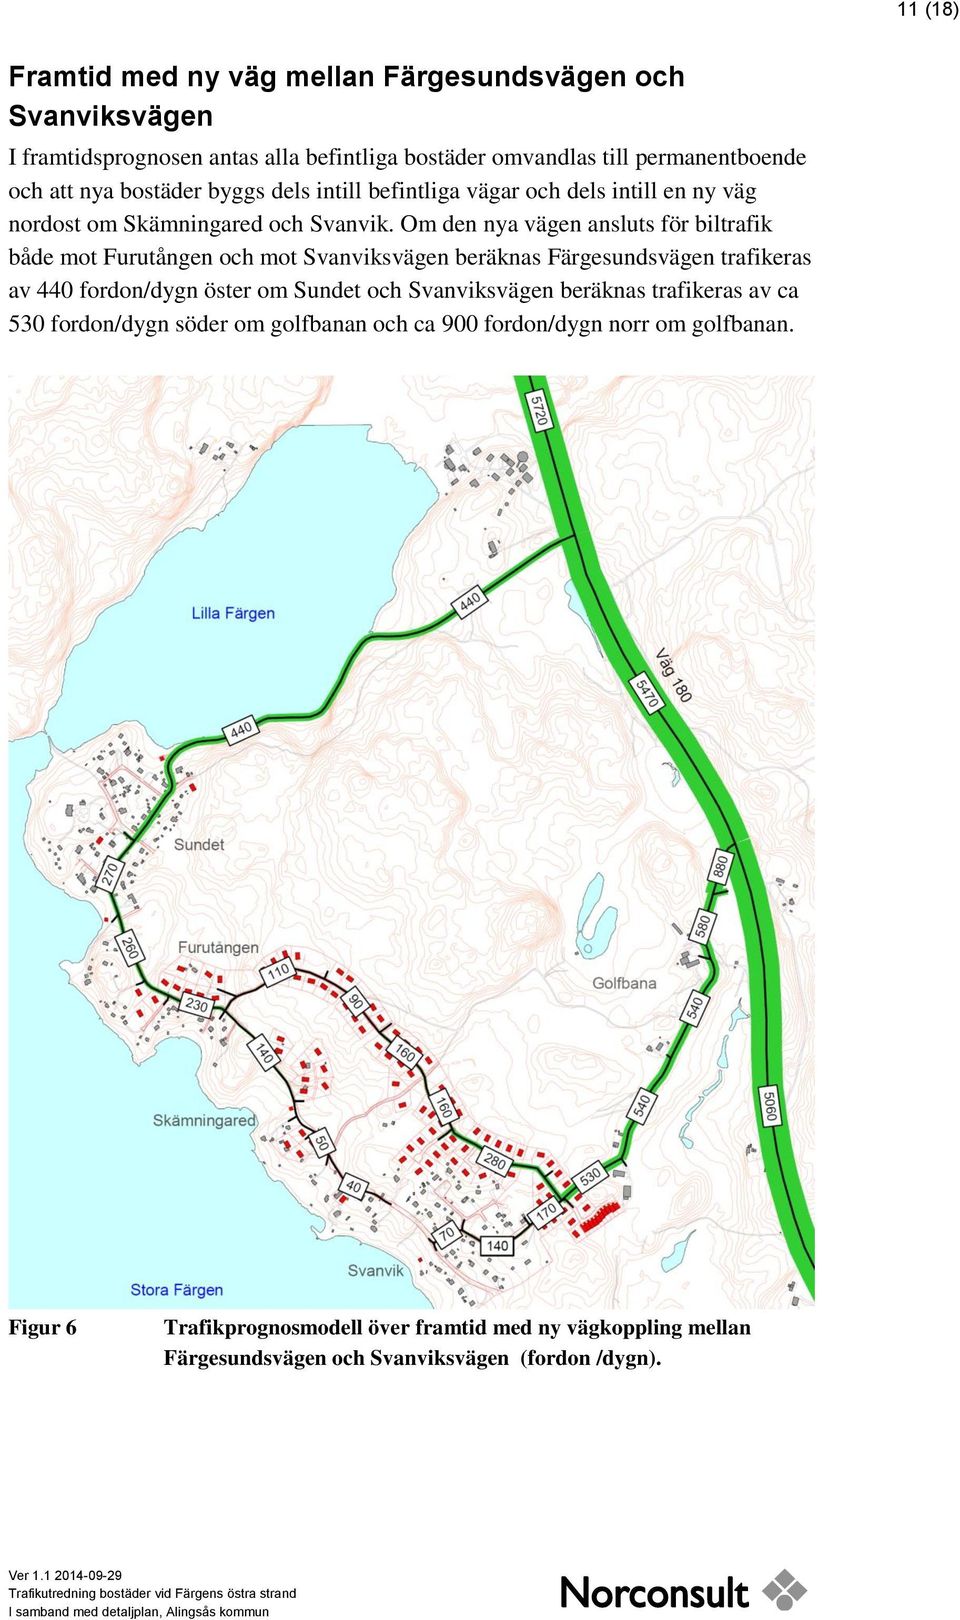 Om den nya vägen ansluts för biltrafik både mot Furutången och mot Svanviksvägen beräknas Färgesundsvägen trafikeras av 440 fordon/dygn öster om Sundet och